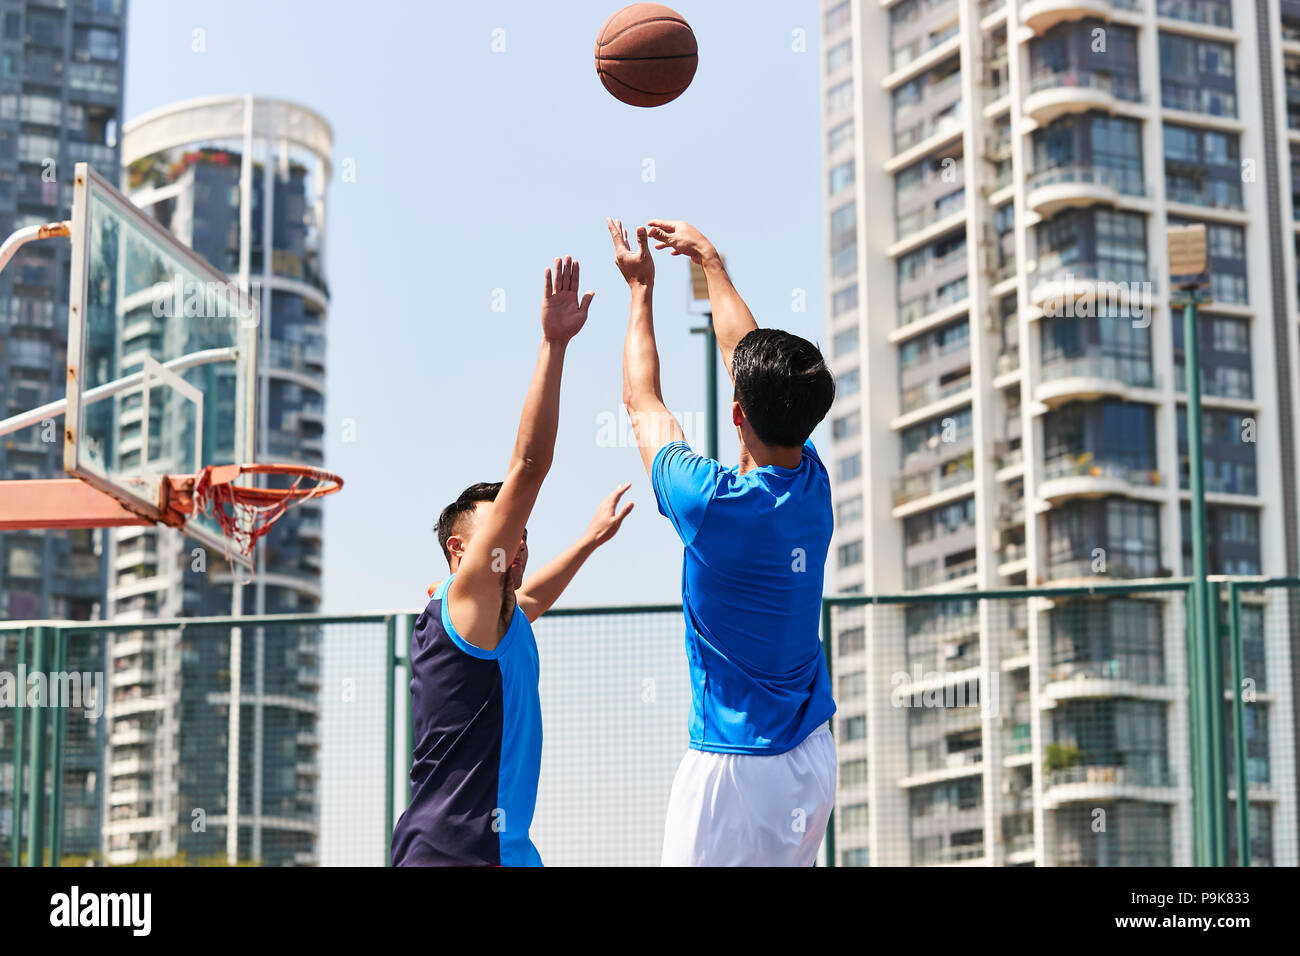 Los jóvenes adultos de Asia jugadores jugando baloncesto en el tribunal exterior. Foto de stock